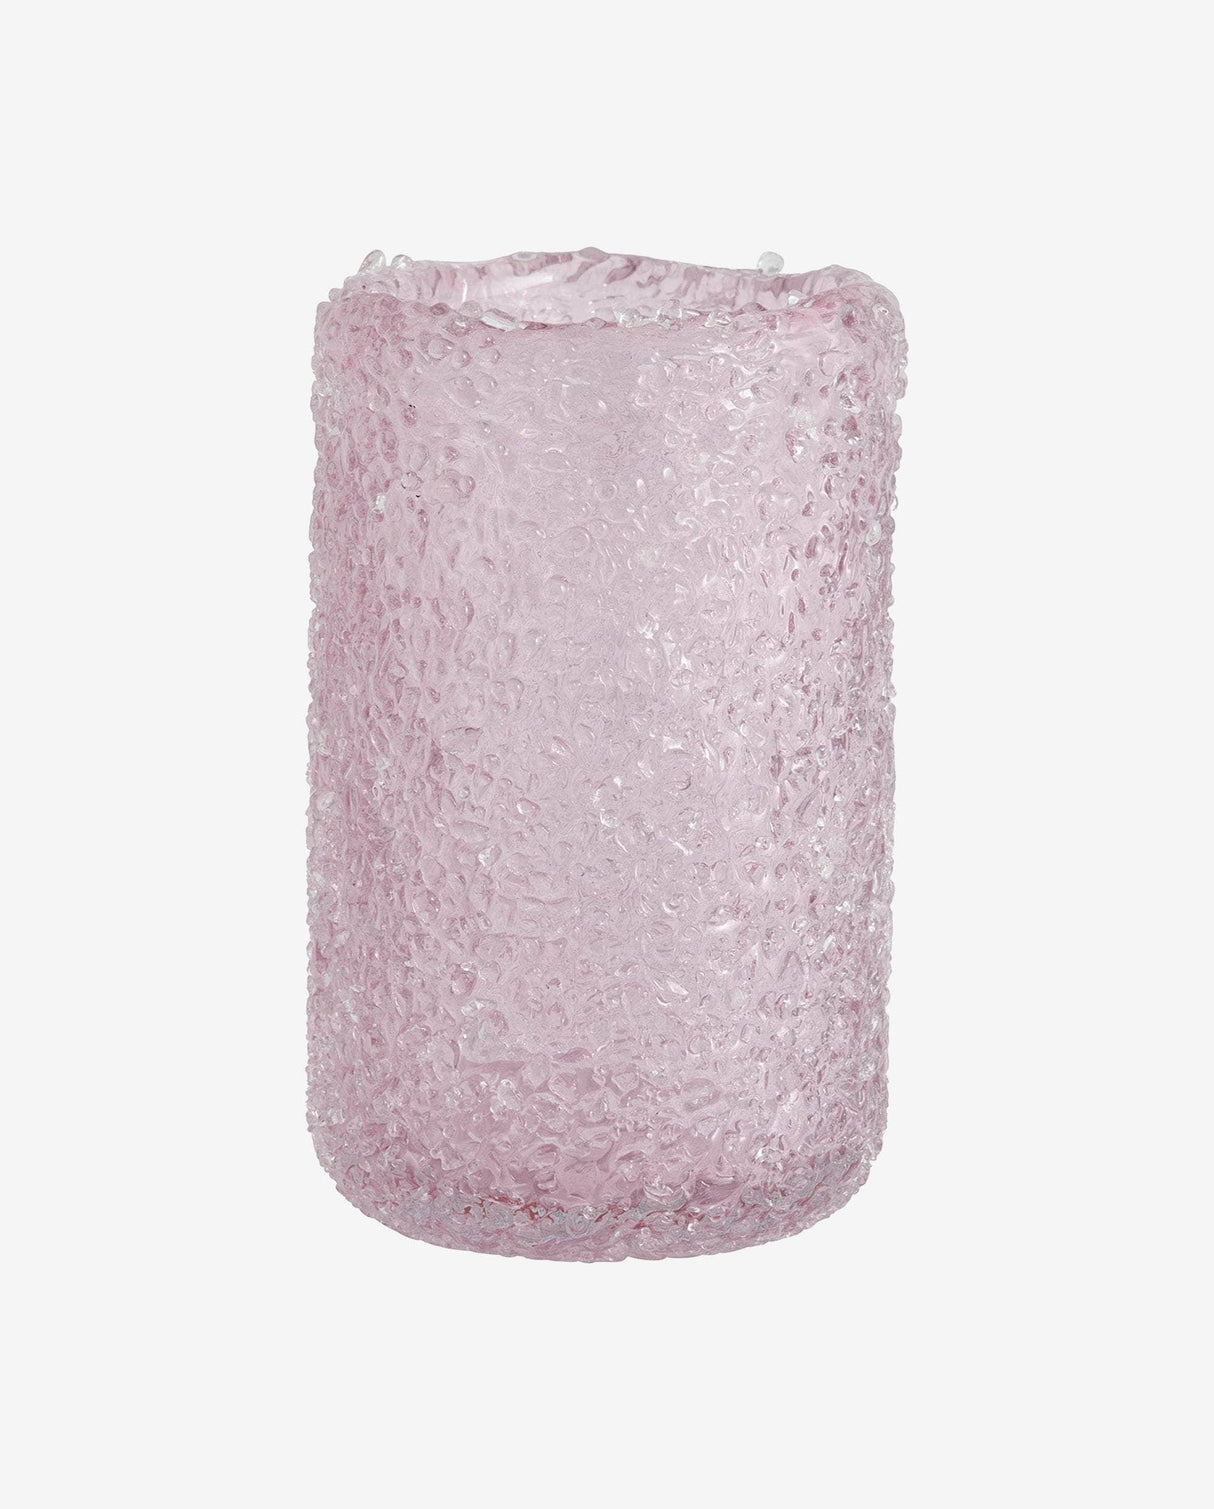 Nordal CLYDE vase, M, pink